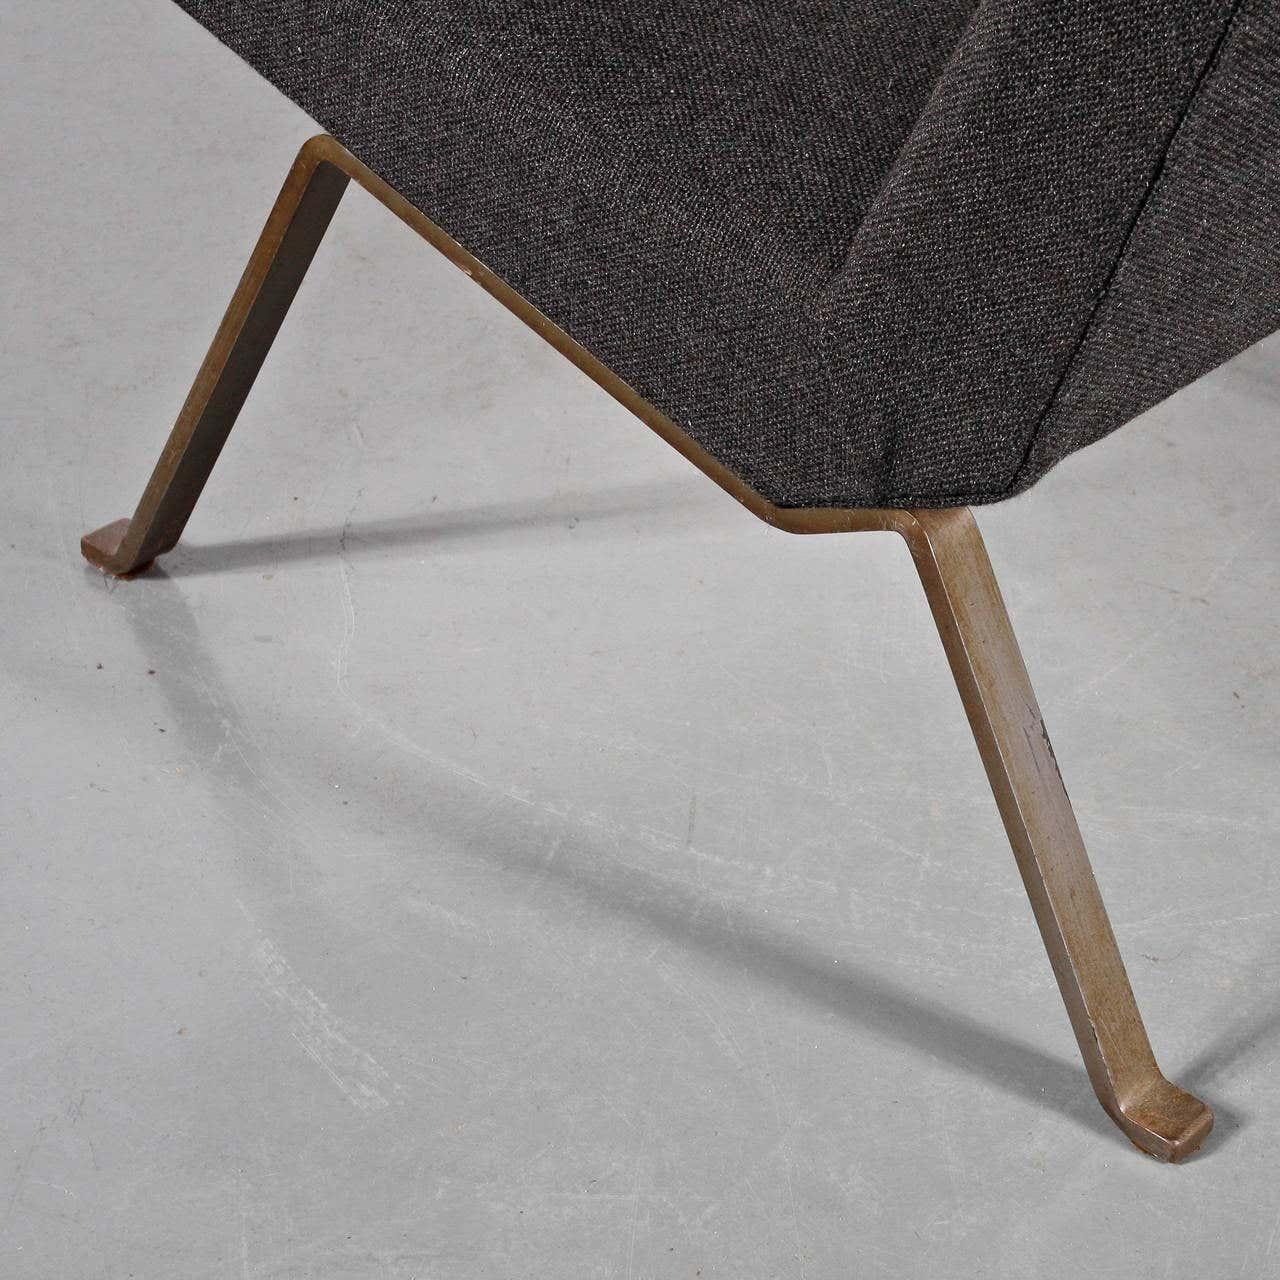 Wir stellen Ihnen ein fesselndes Paar Easy Chairs vor, die der bekannte niederländische Designer Koene Oberman in den 1950er Jahren entworfen hat. Diese von Meubelindustrie Gelderland BV in Culemborg, Niederlande, hergestellten Stühle sind ein